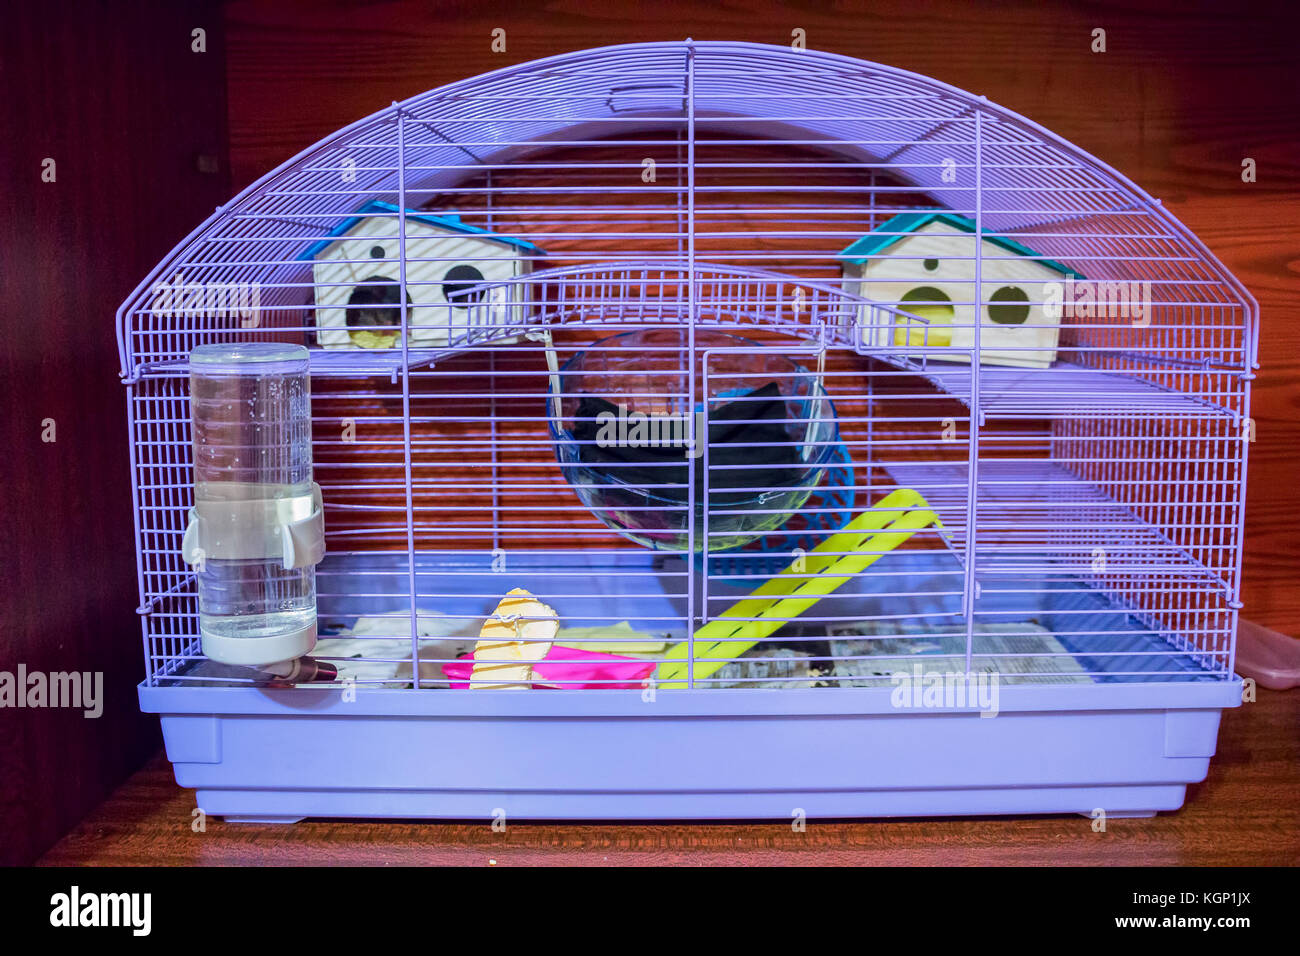 Käfig für kleine Haustiere Stockfotografie - Alamy